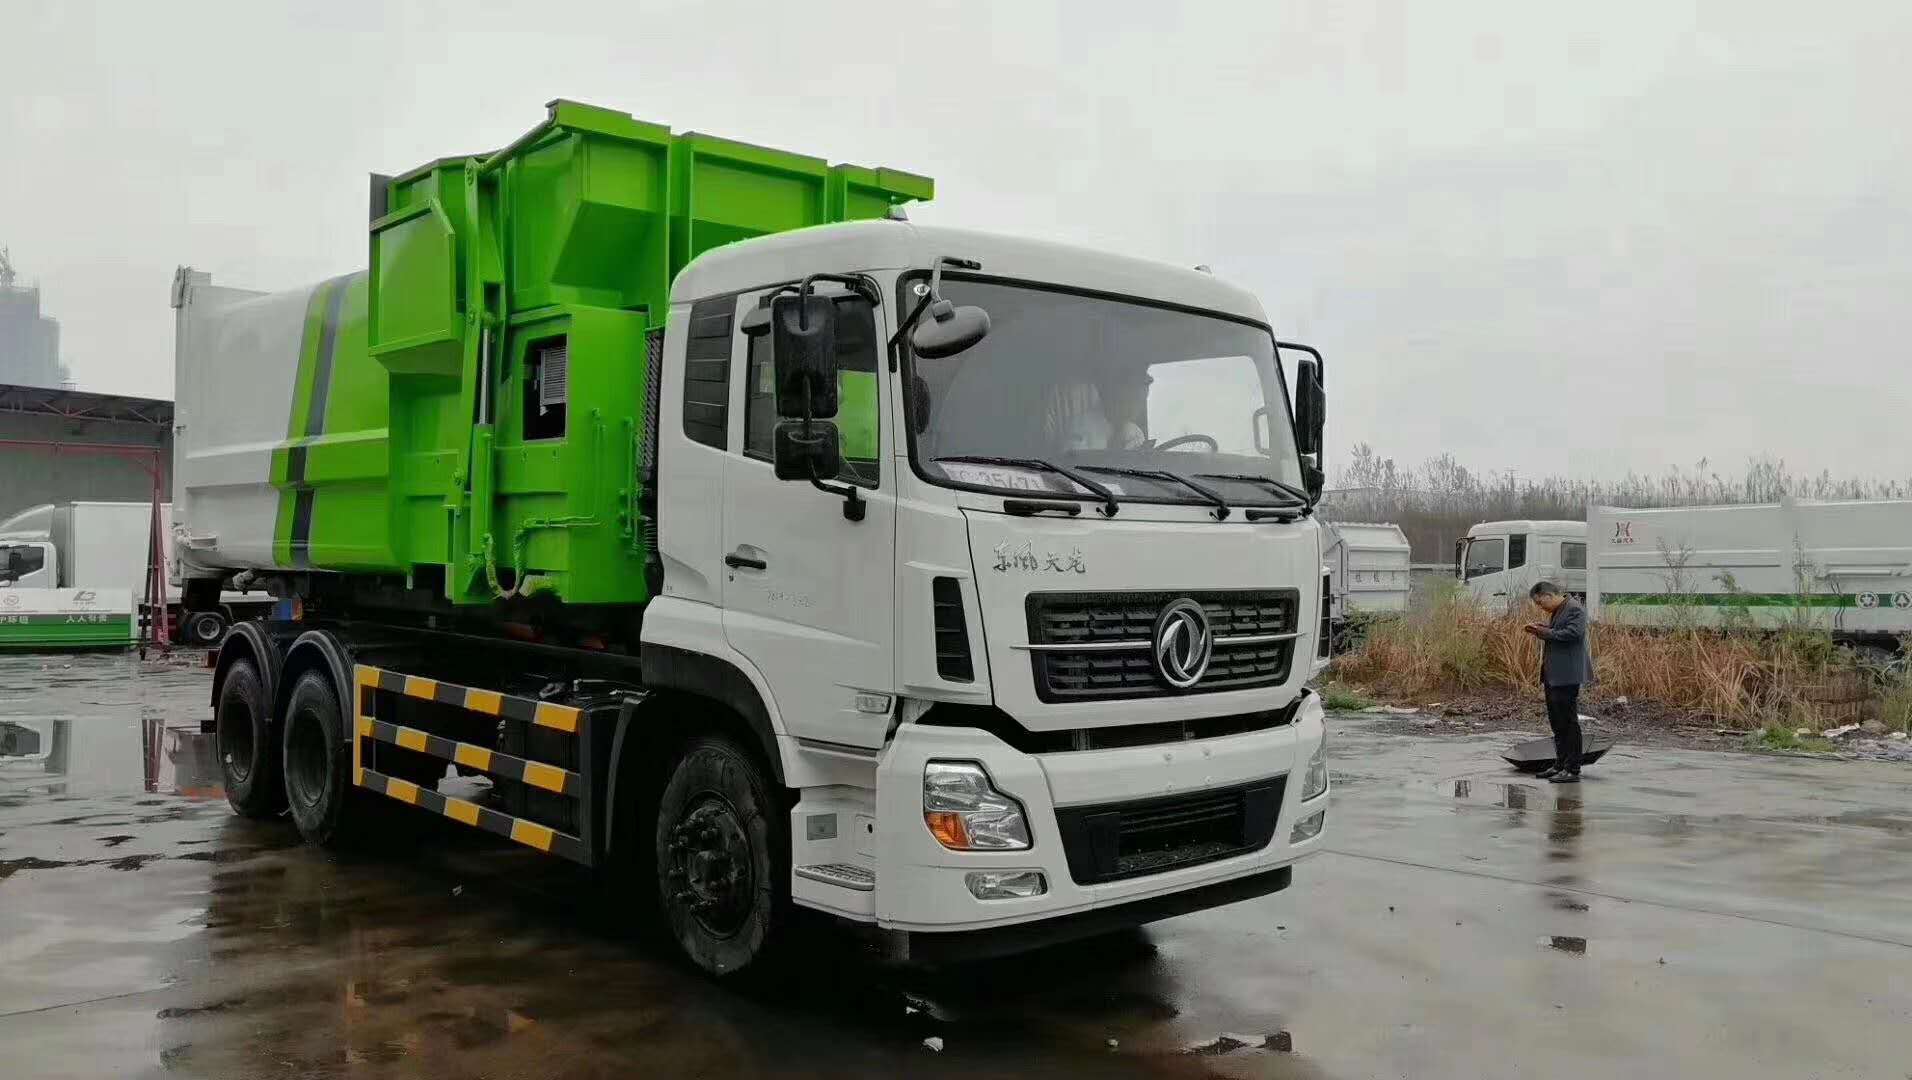 东风天龙18吨压缩式垃圾车